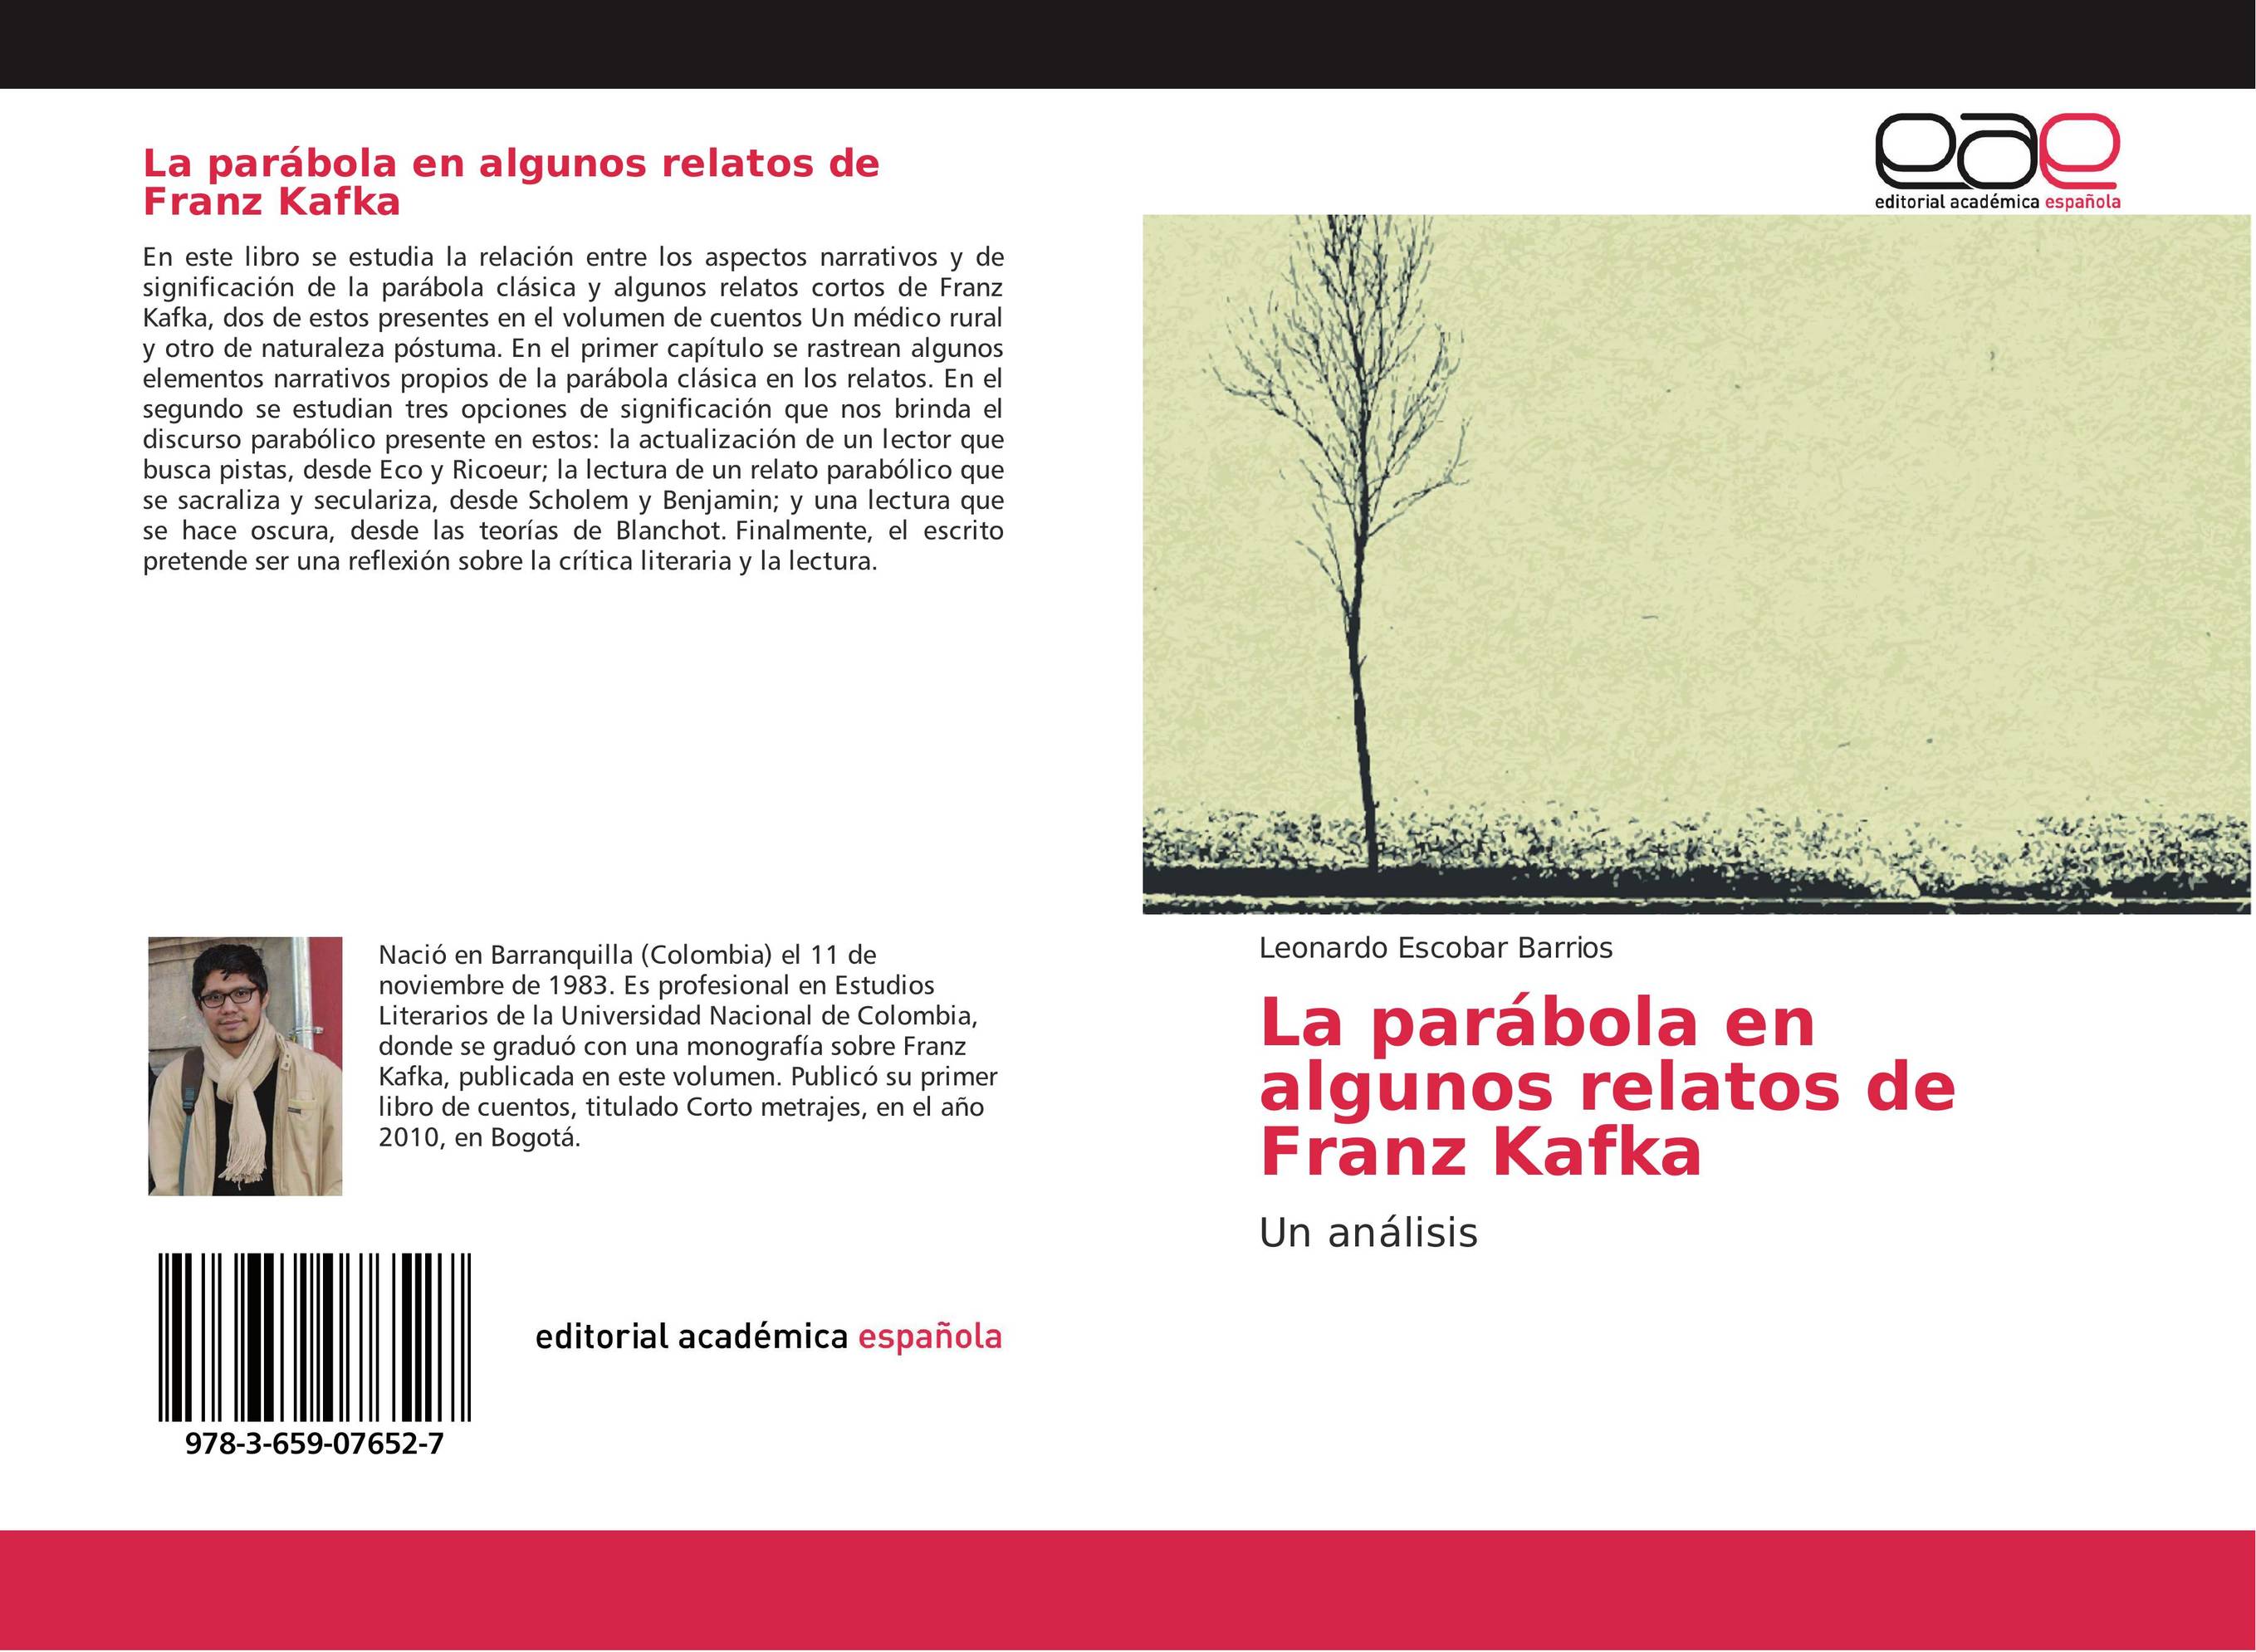 La parábola en algunos relatos de Franz Kafka :: Librería Agrícola Jerez